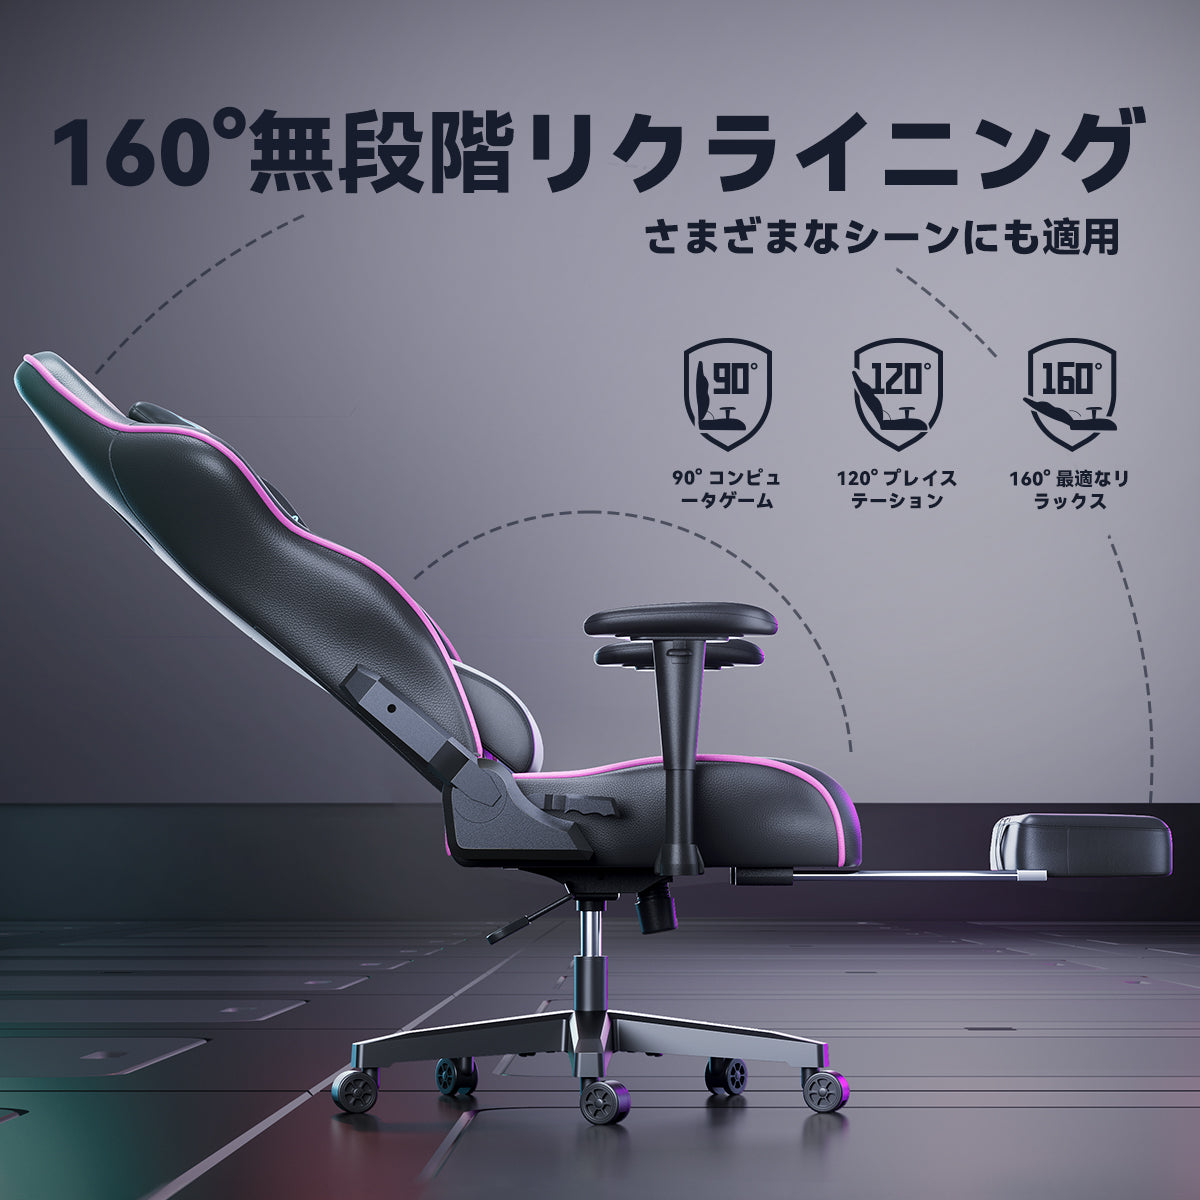 【色: 幻霊】AutoFull(オートフル) ゲーミングチェア デスクチェア 座オフィス家具